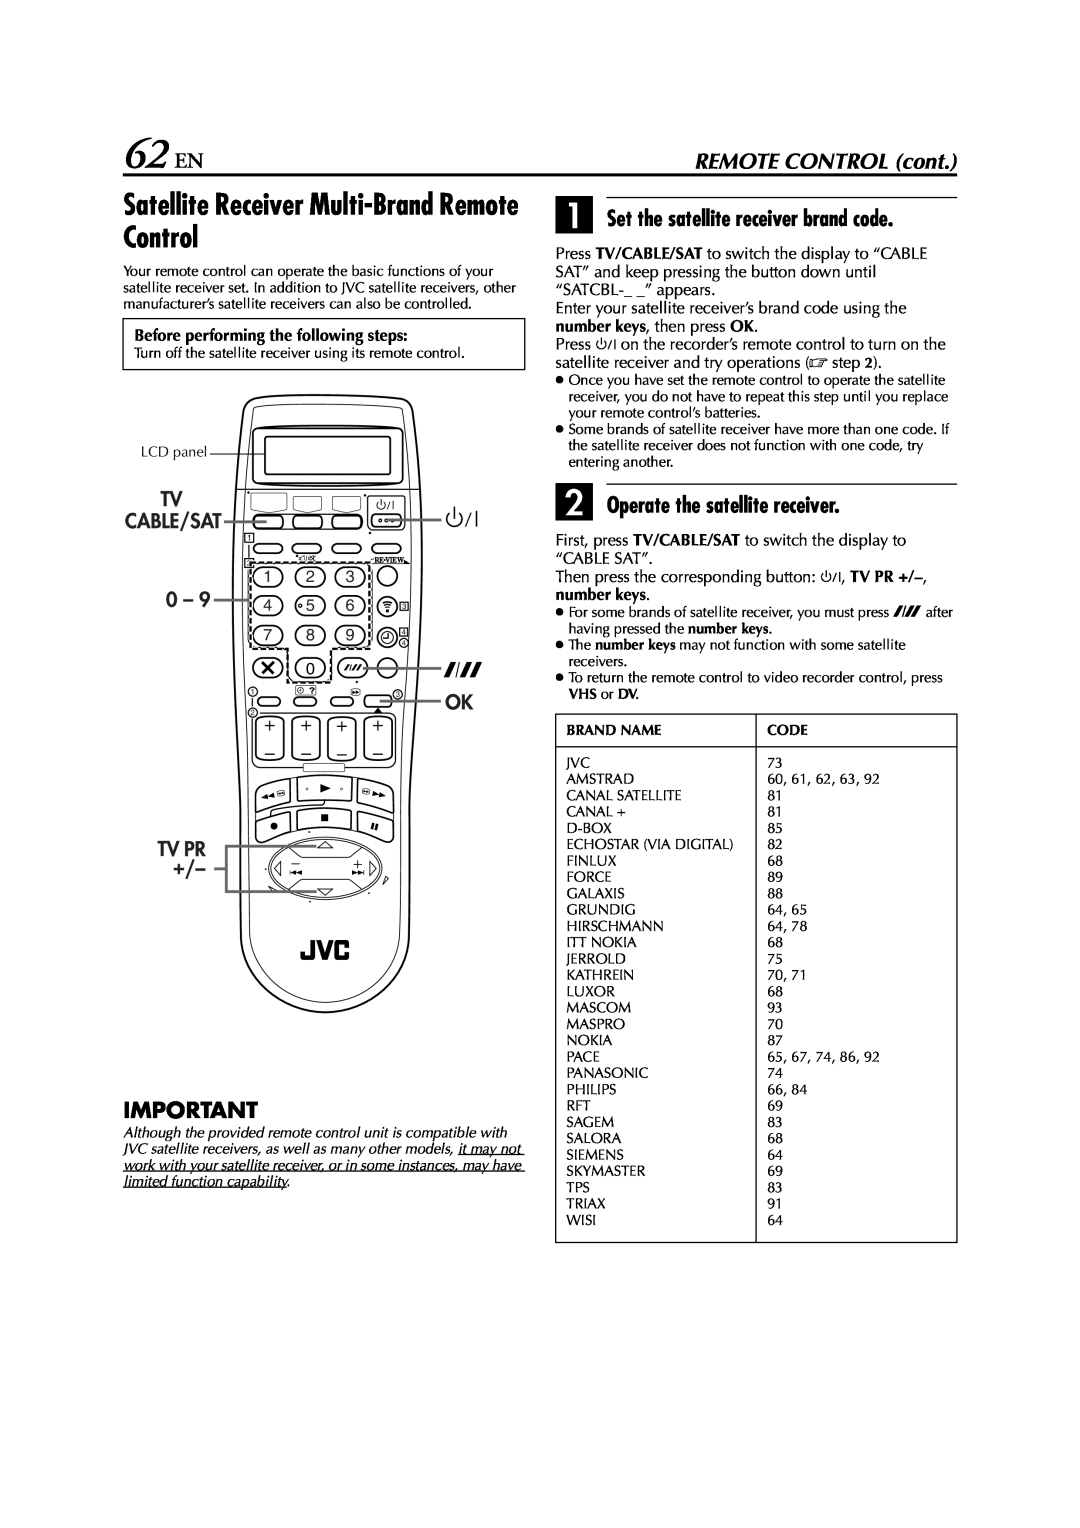 JVC LPT0616-001A 62 EN, Satellite Receiver Multi-Brand Remote Control, A Set the satellite receiver brand code 